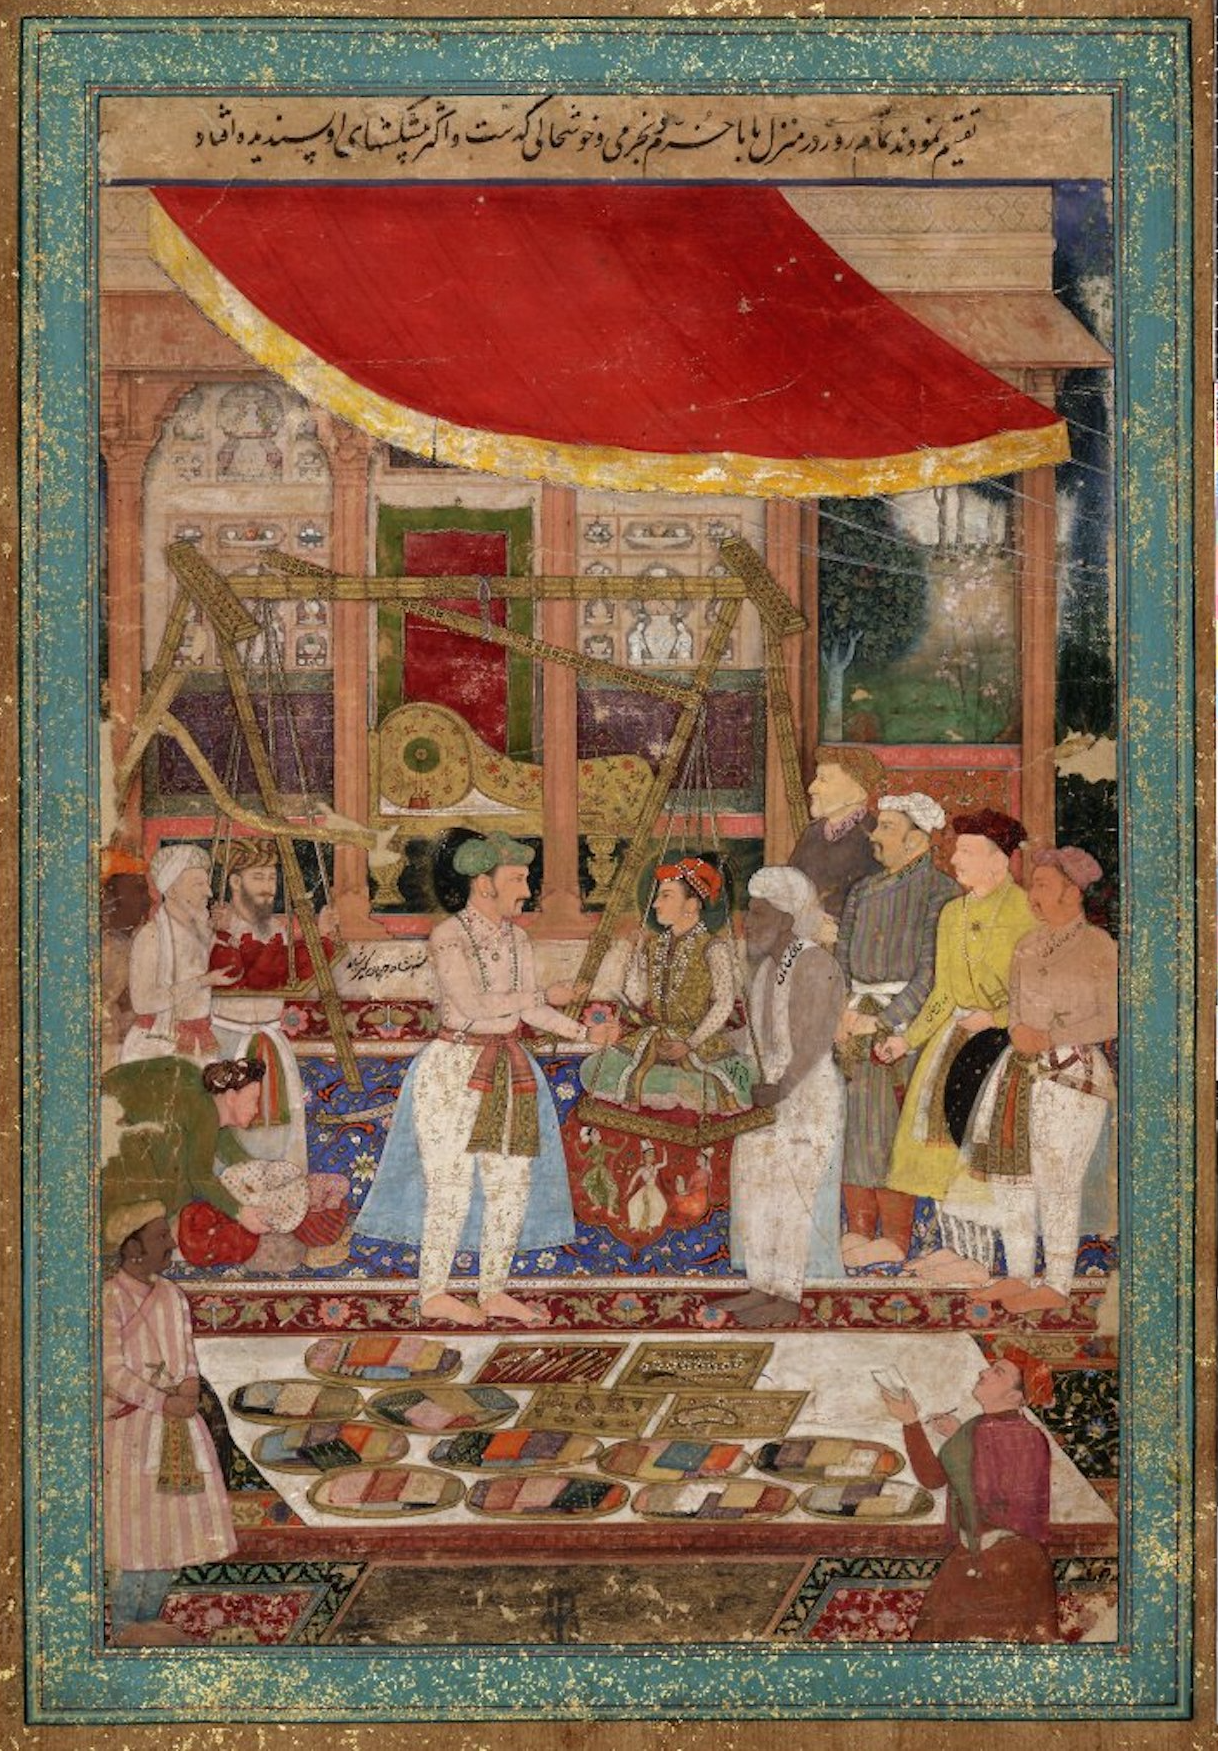 एम्परर जहांगीर वेस प्रिंस ख़ुर्रम इन गोल्ड by  Manohar - १६१० - १६१५ - २९.५ x ४४.३ से.मी. 